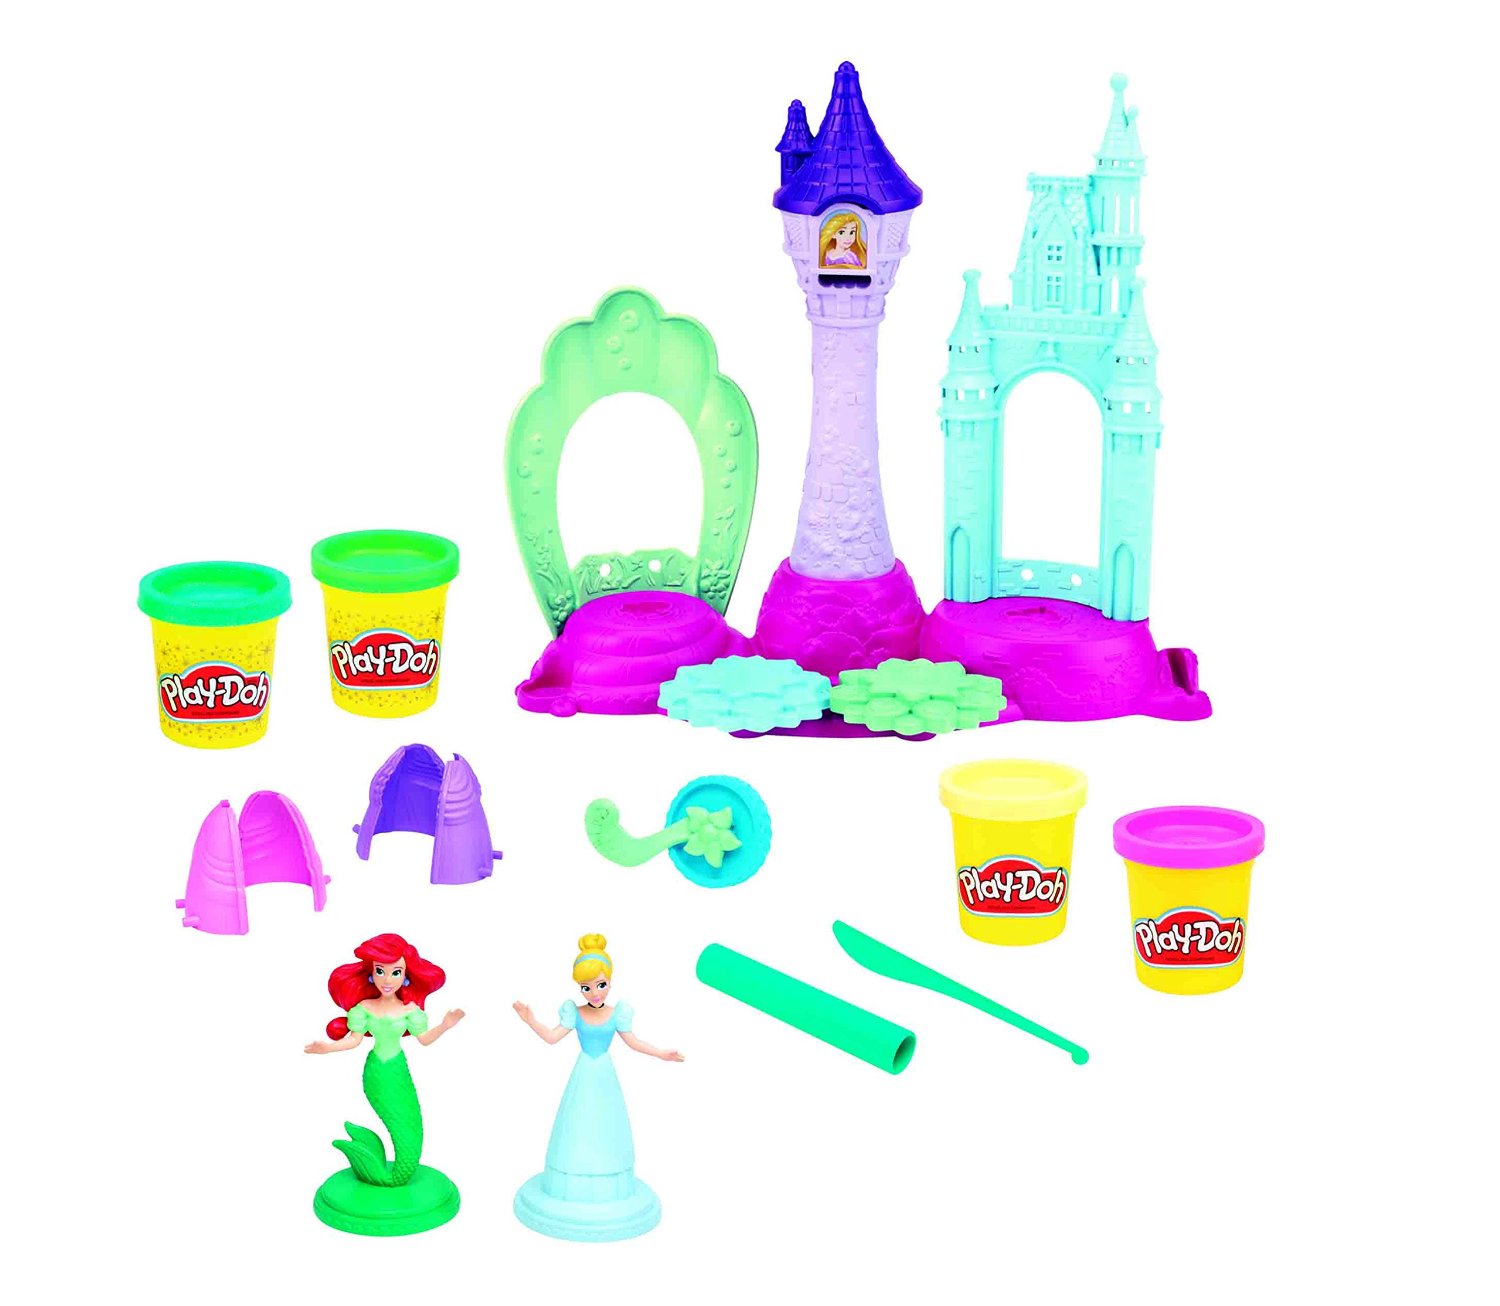 Игровой набор - Замок Принцесс, Play-Doh  